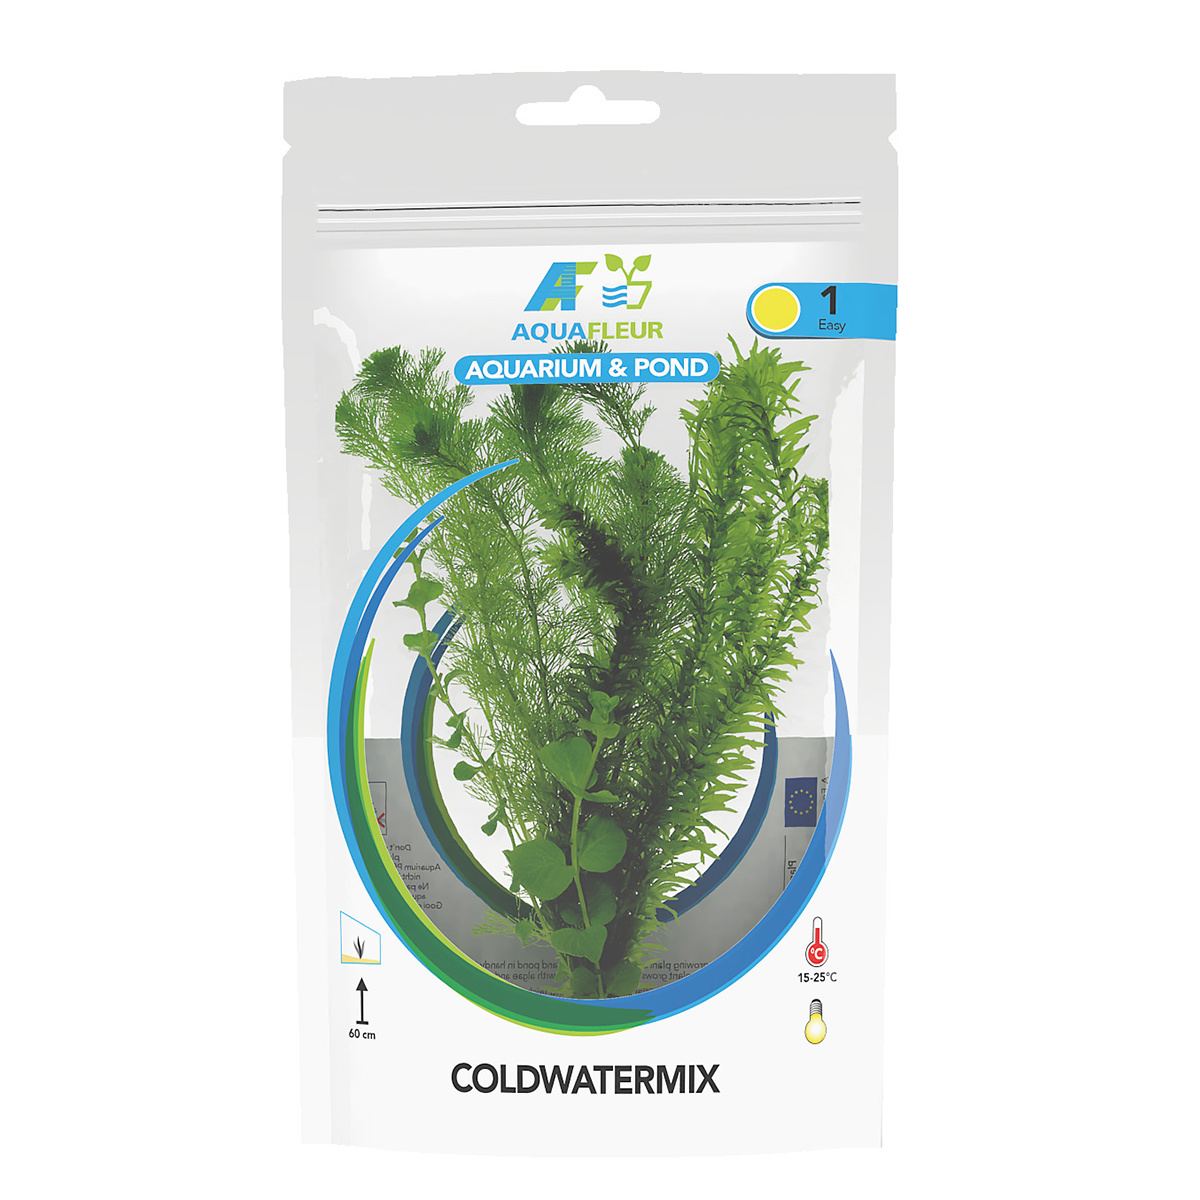 Coldwatermix in zak (koud waterplant) - AquastoreXL